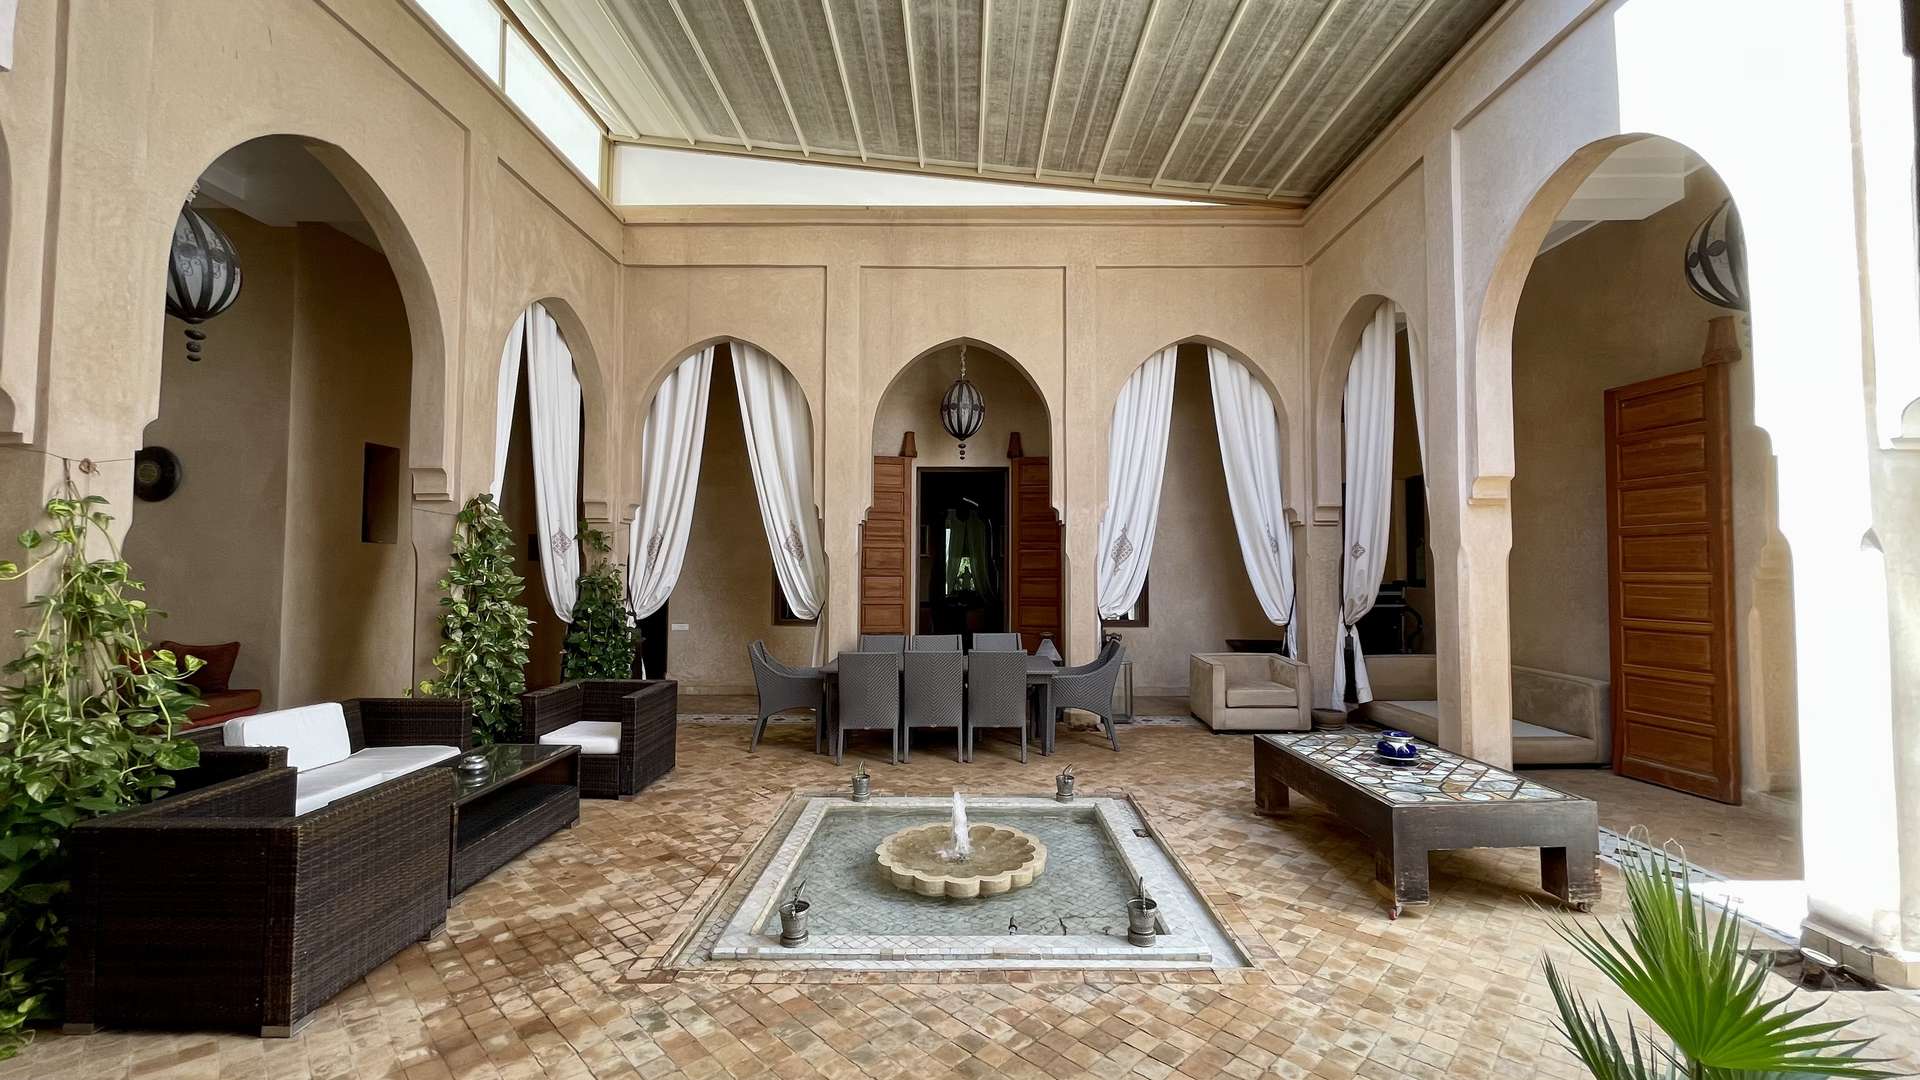 Location de vacances,Villa,Somptueuse Villa de style Riad de plain-pied 4 suites sur un parc de 4200M2,Marrakech,Route d'Ouarzazate